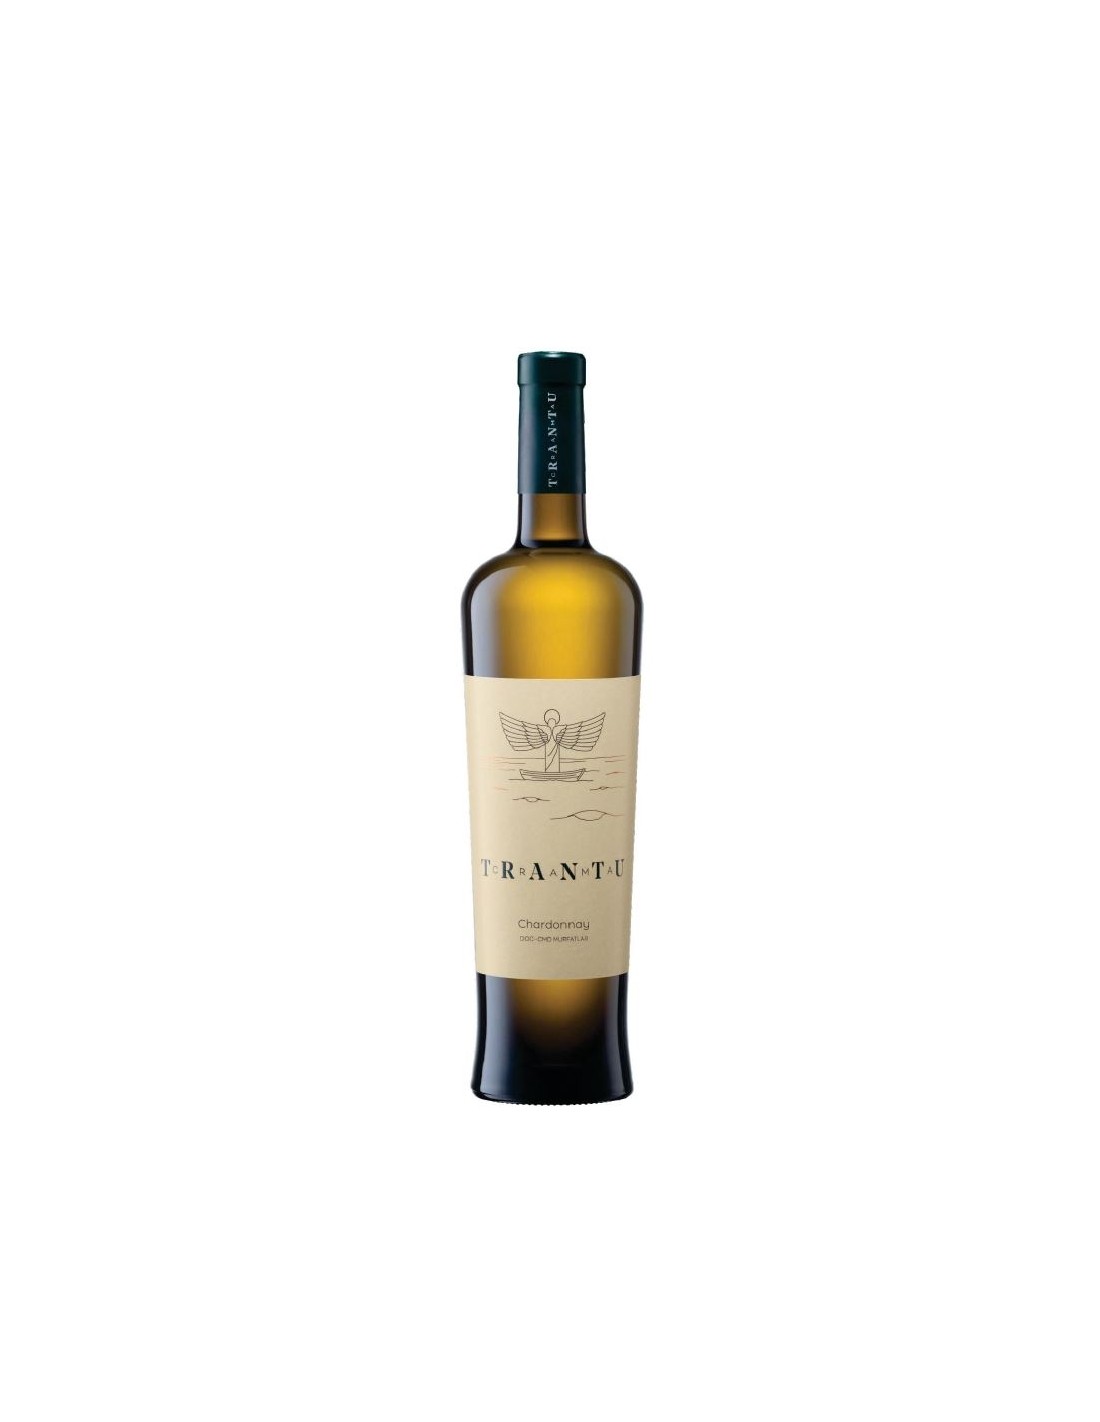 Vin alb sec, Chardonnay, Crama Trantu Murfatlar, 0.75L, 13.5% alc., Romania